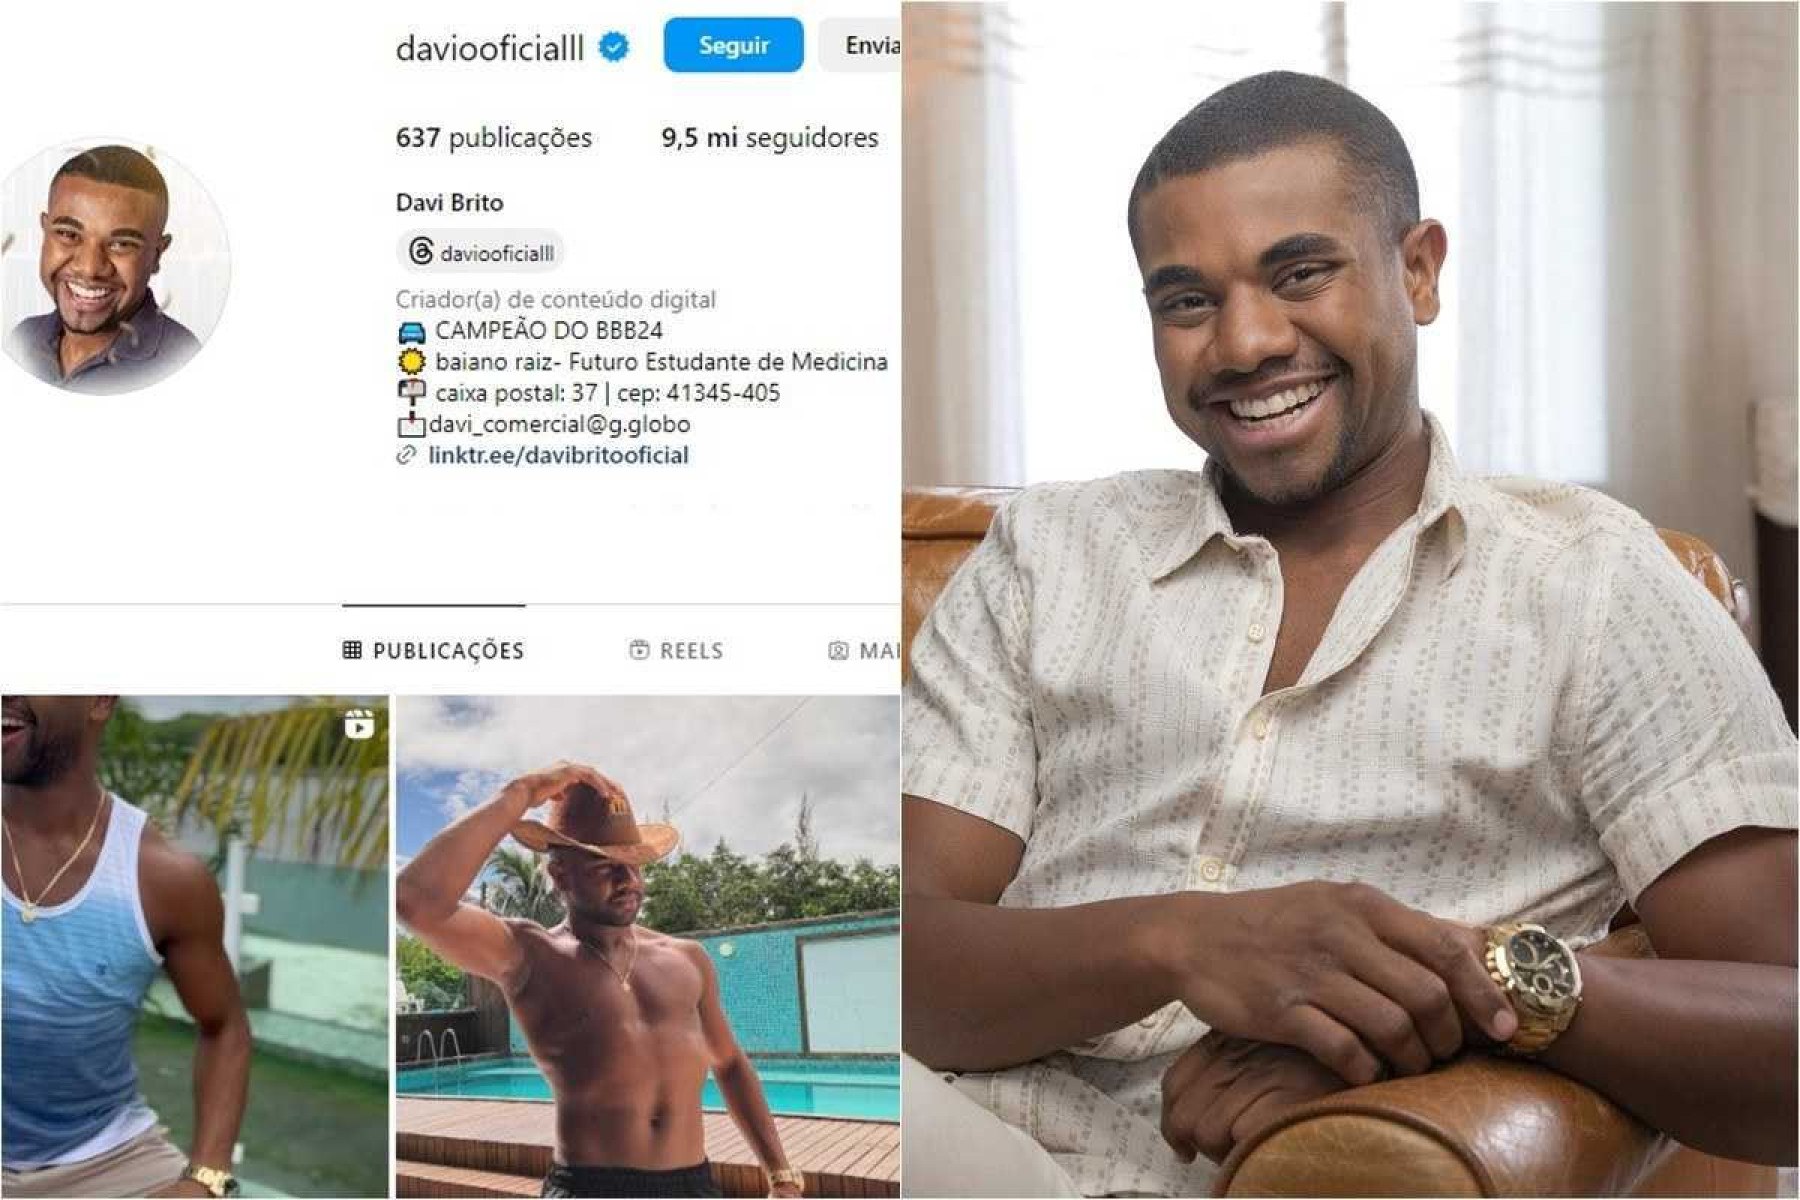 Davi perdeu mais de 1 milhão de seguidores no Instagram após vencer o BBB 24